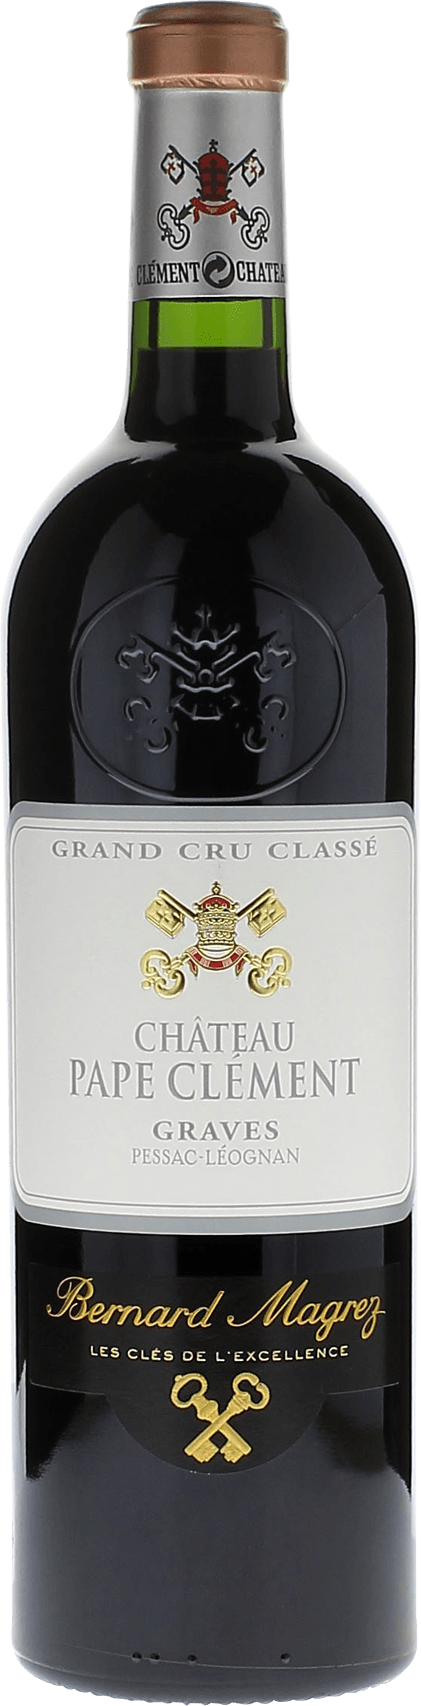 Pape clement rouge 1999 Grand Cru Class Pessac-Lognan, Bordeaux rouge